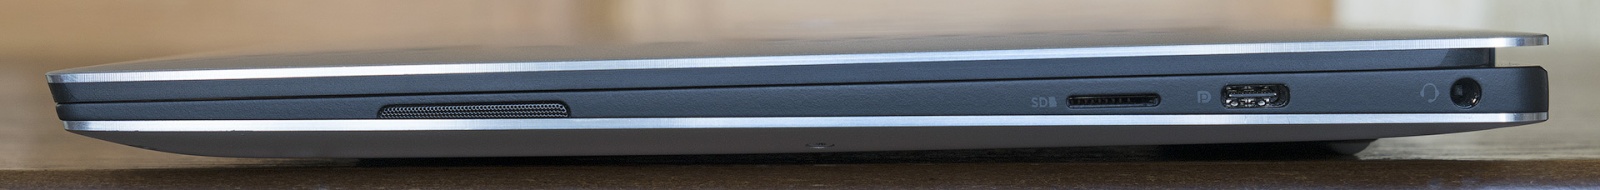 Обзор ноутбука Dell XPS 13 9370: лёгкий, красивый, быстрый - 9